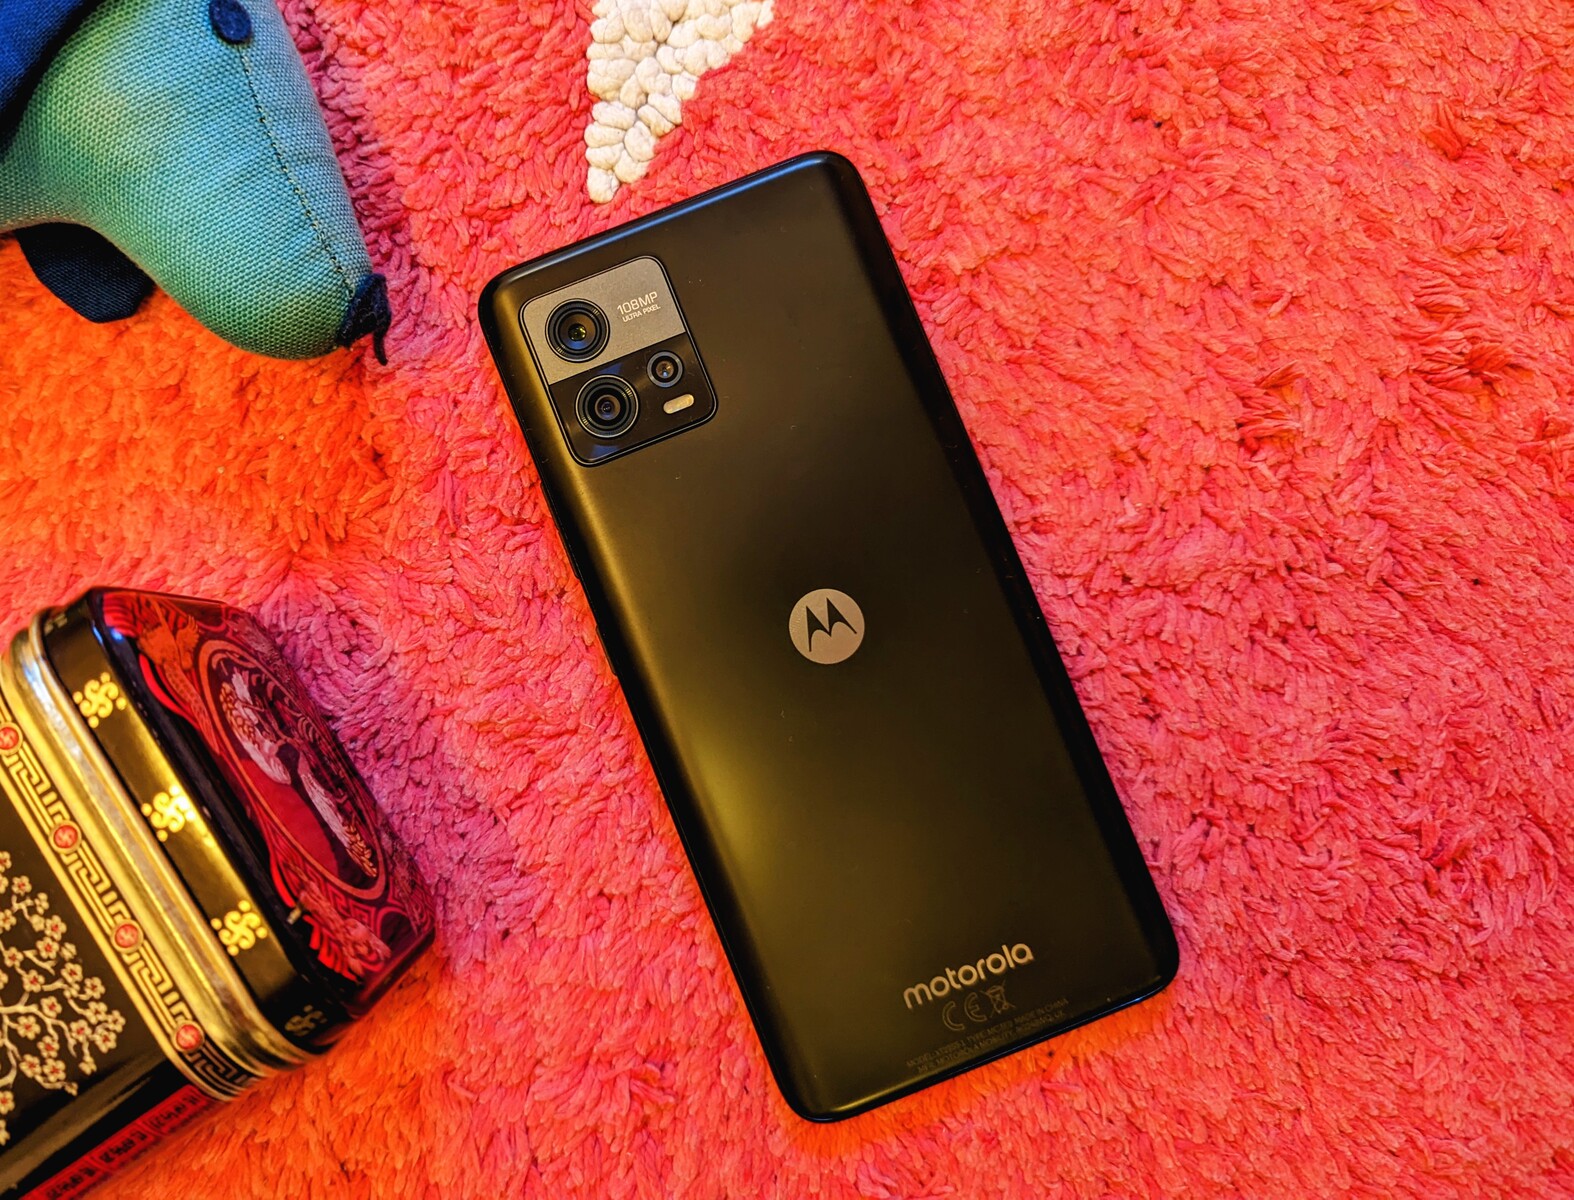 Motorola - Capturar tus mejores momentos con el moto g72 y su cámara de  108MP. Es la manera perfecta de hacer que cada recuerdo sea inolvidable.  🤳✨ Experimenta con tomas de cerca